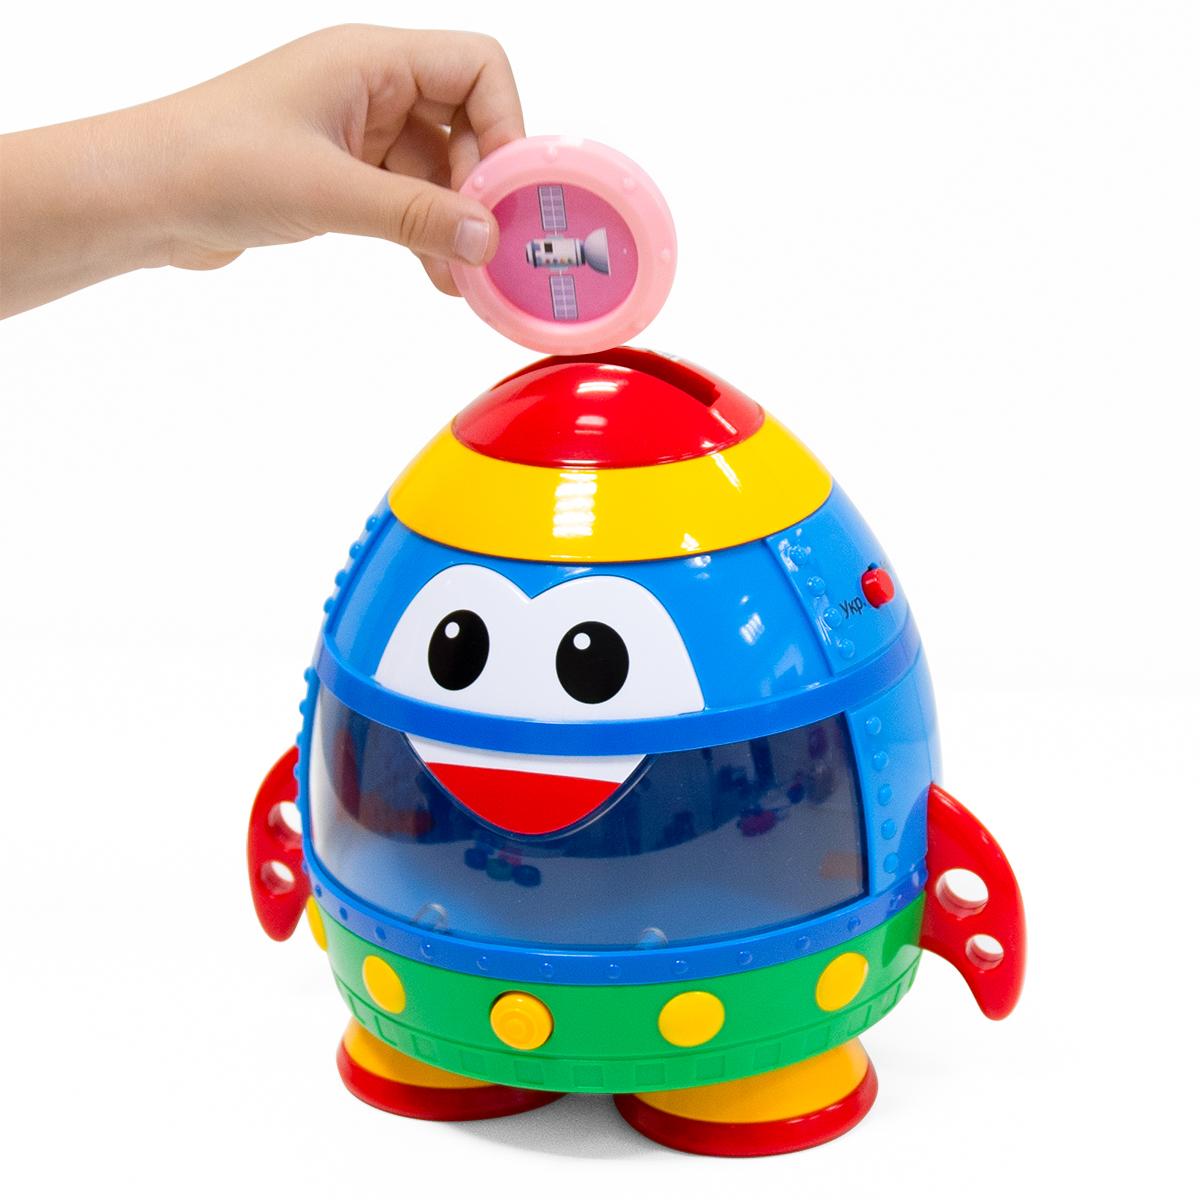 Інтерактивна двомовна іграшка - Smart-Звездолет (344675), KIDDI SMART